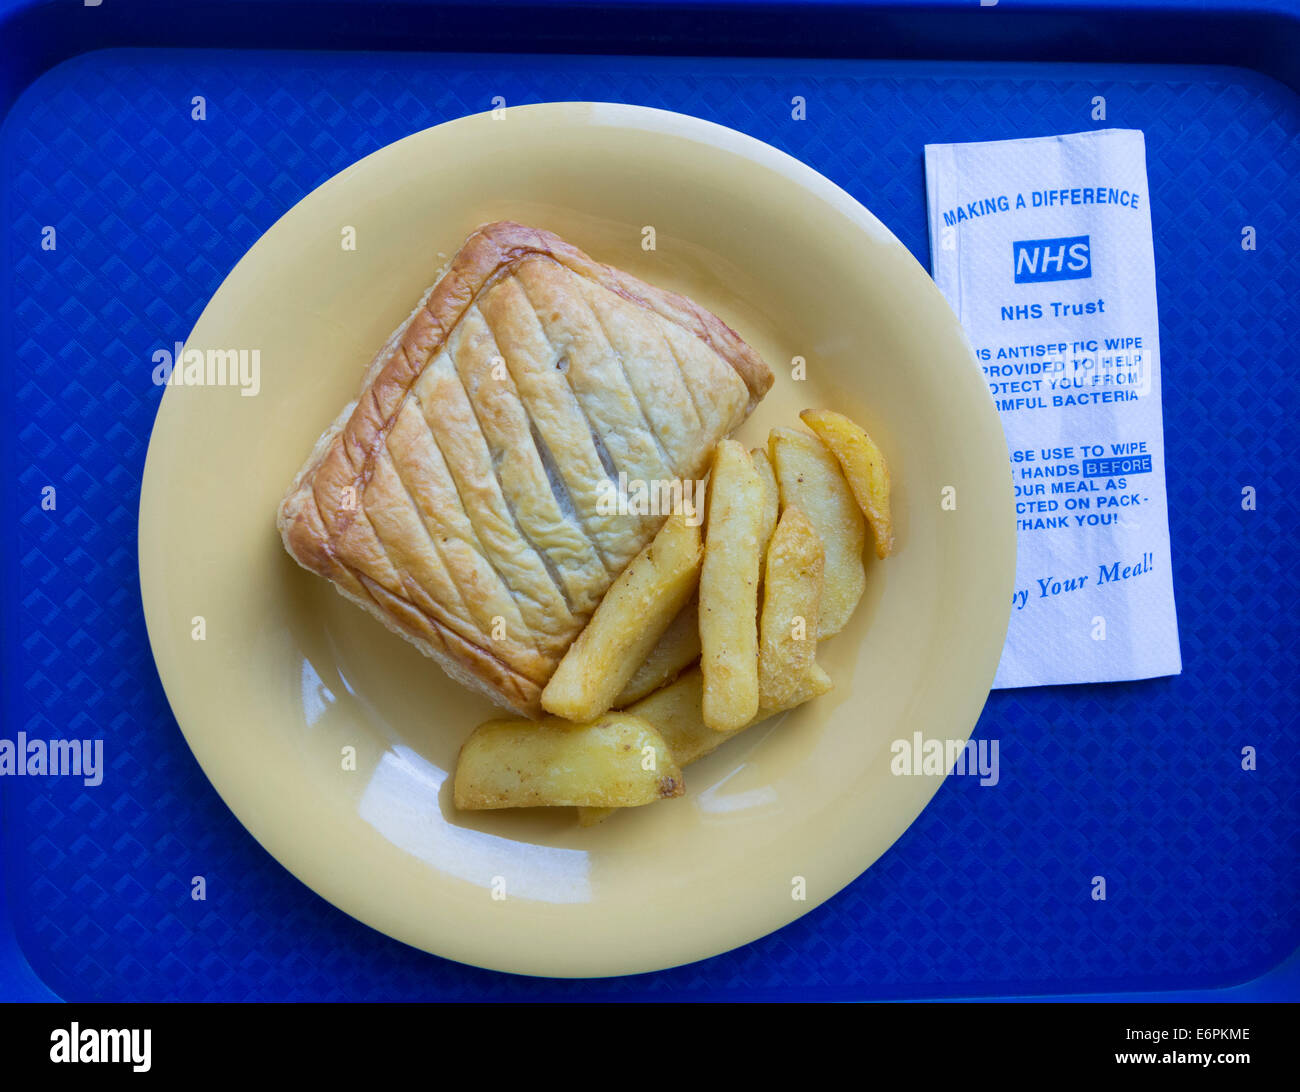 L'alimentation de l'hôpital. Repas sur plateau en hôpital du NHS en Angleterre, Royaume-Uni Banque D'Images